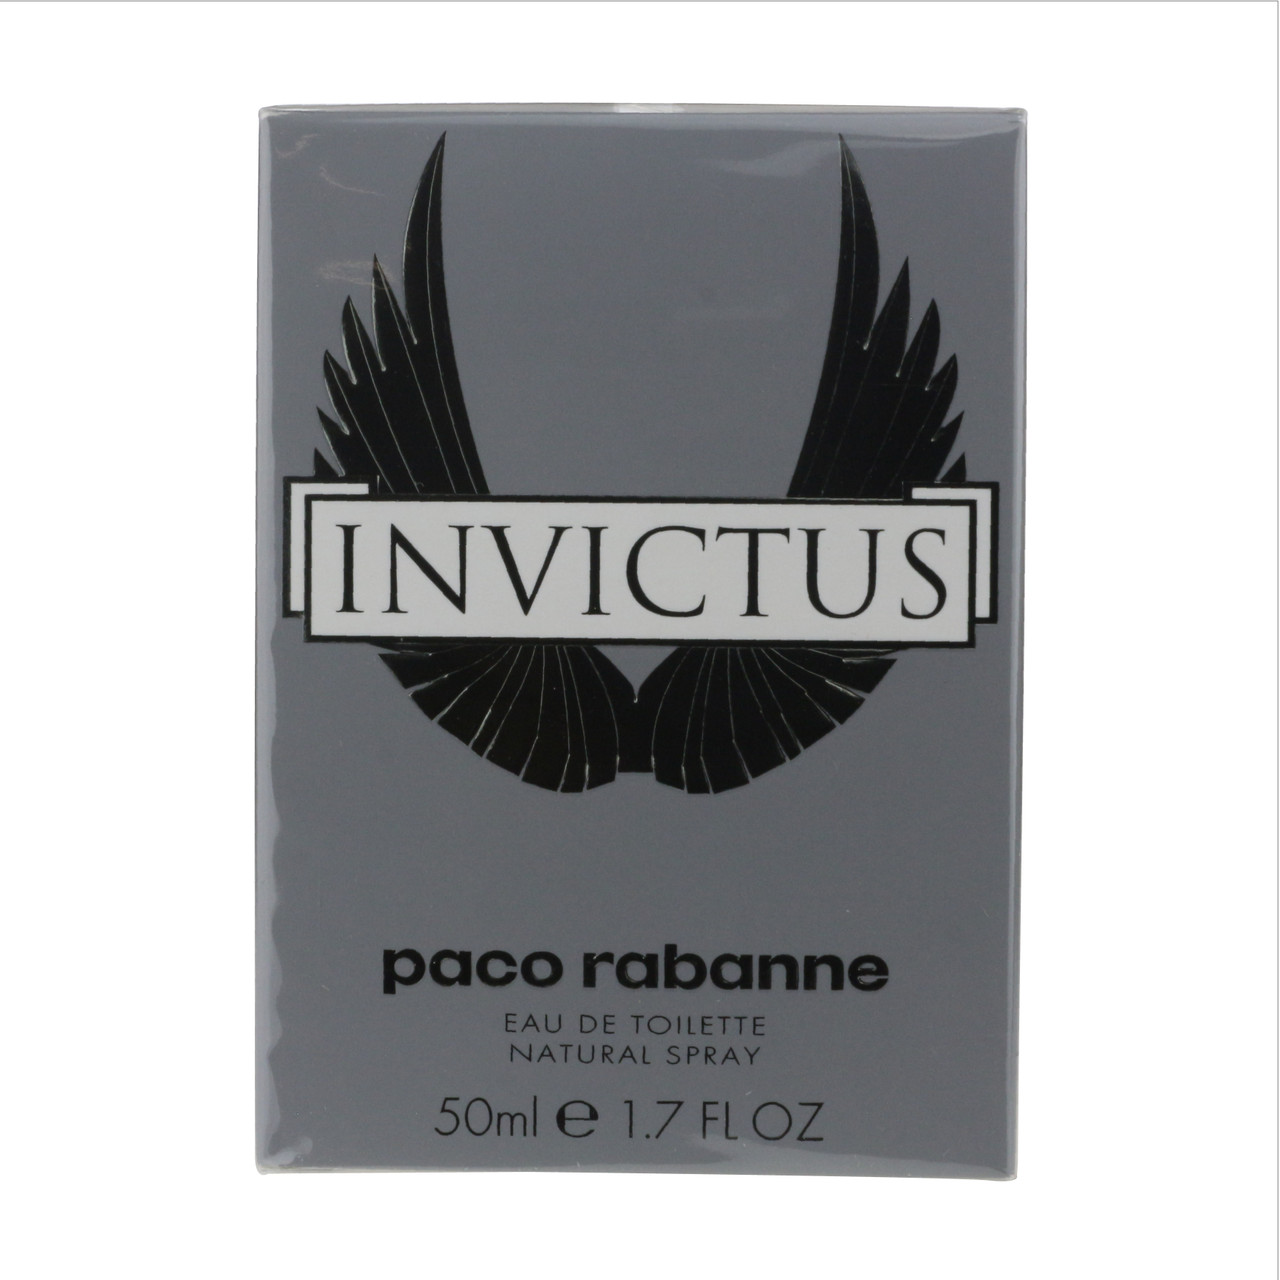 Paco Rabanne Invictus Box Toilette Eau De 1.7oz/50ml New In